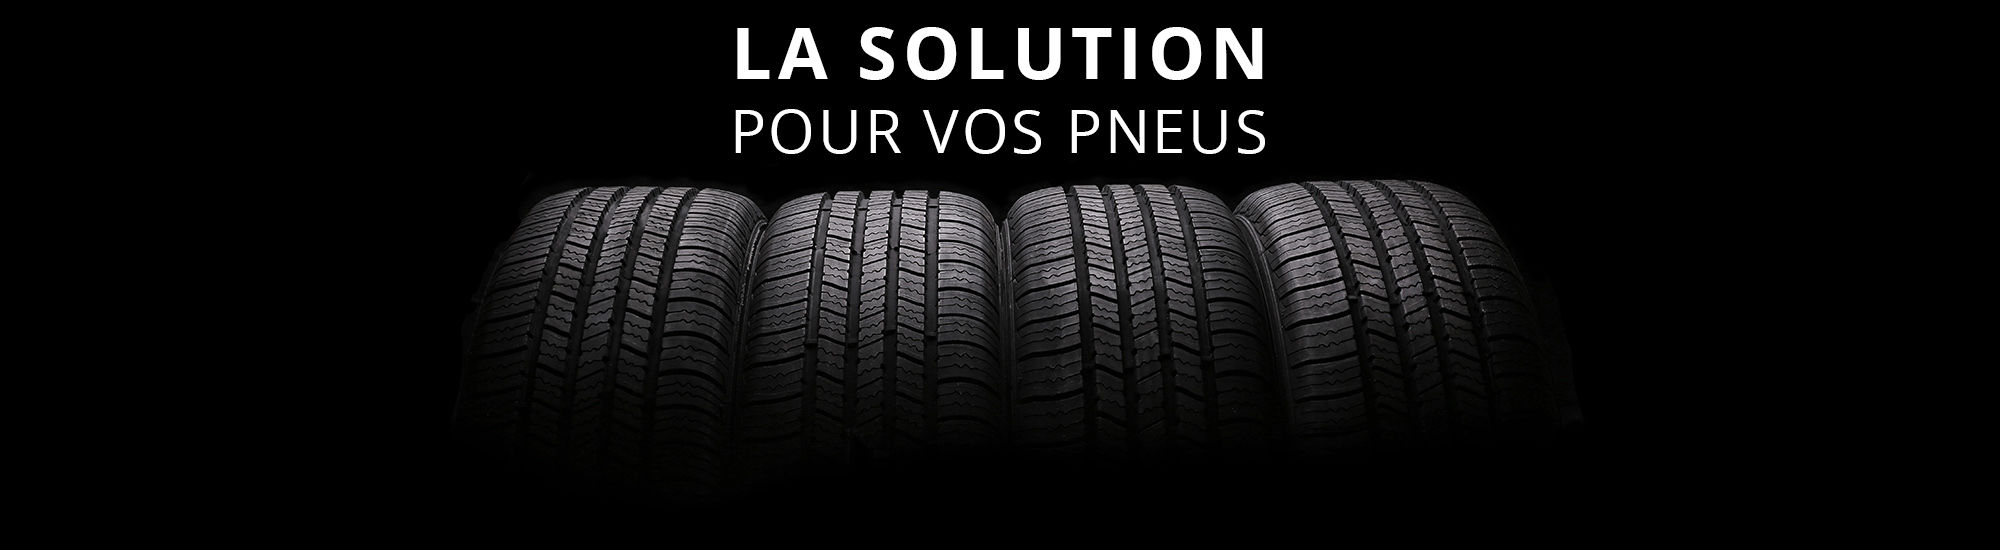 La solution pour vos pneus